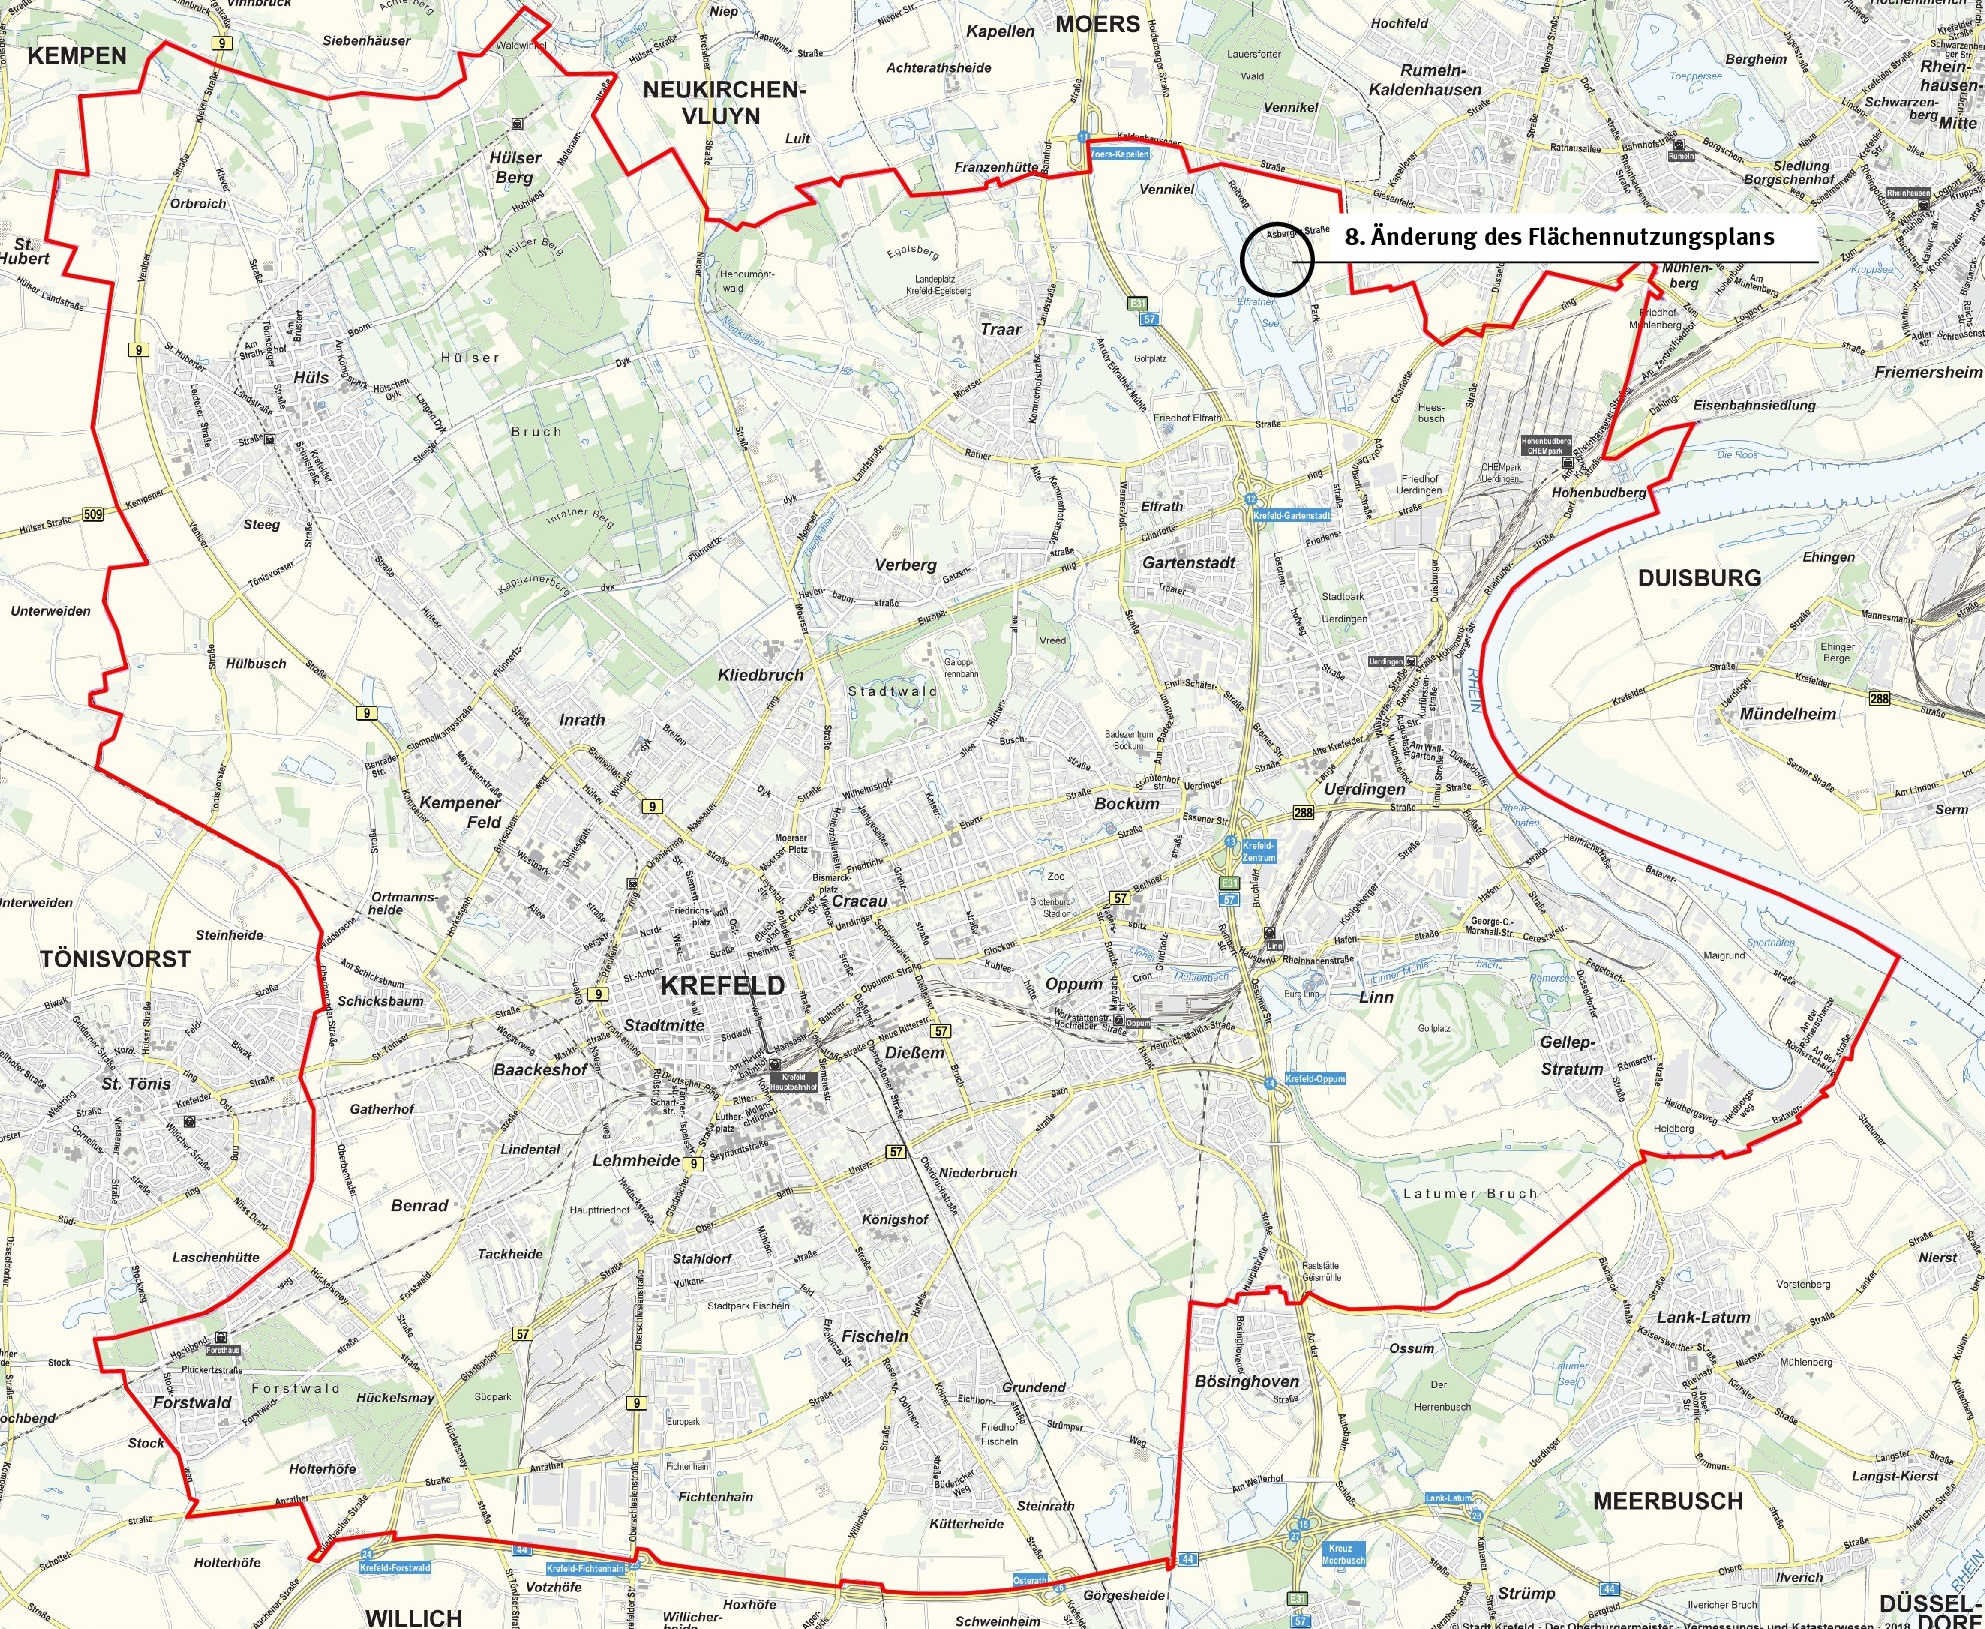 8. Änderung des Flächennutzungsplanes in der Stadtkarte